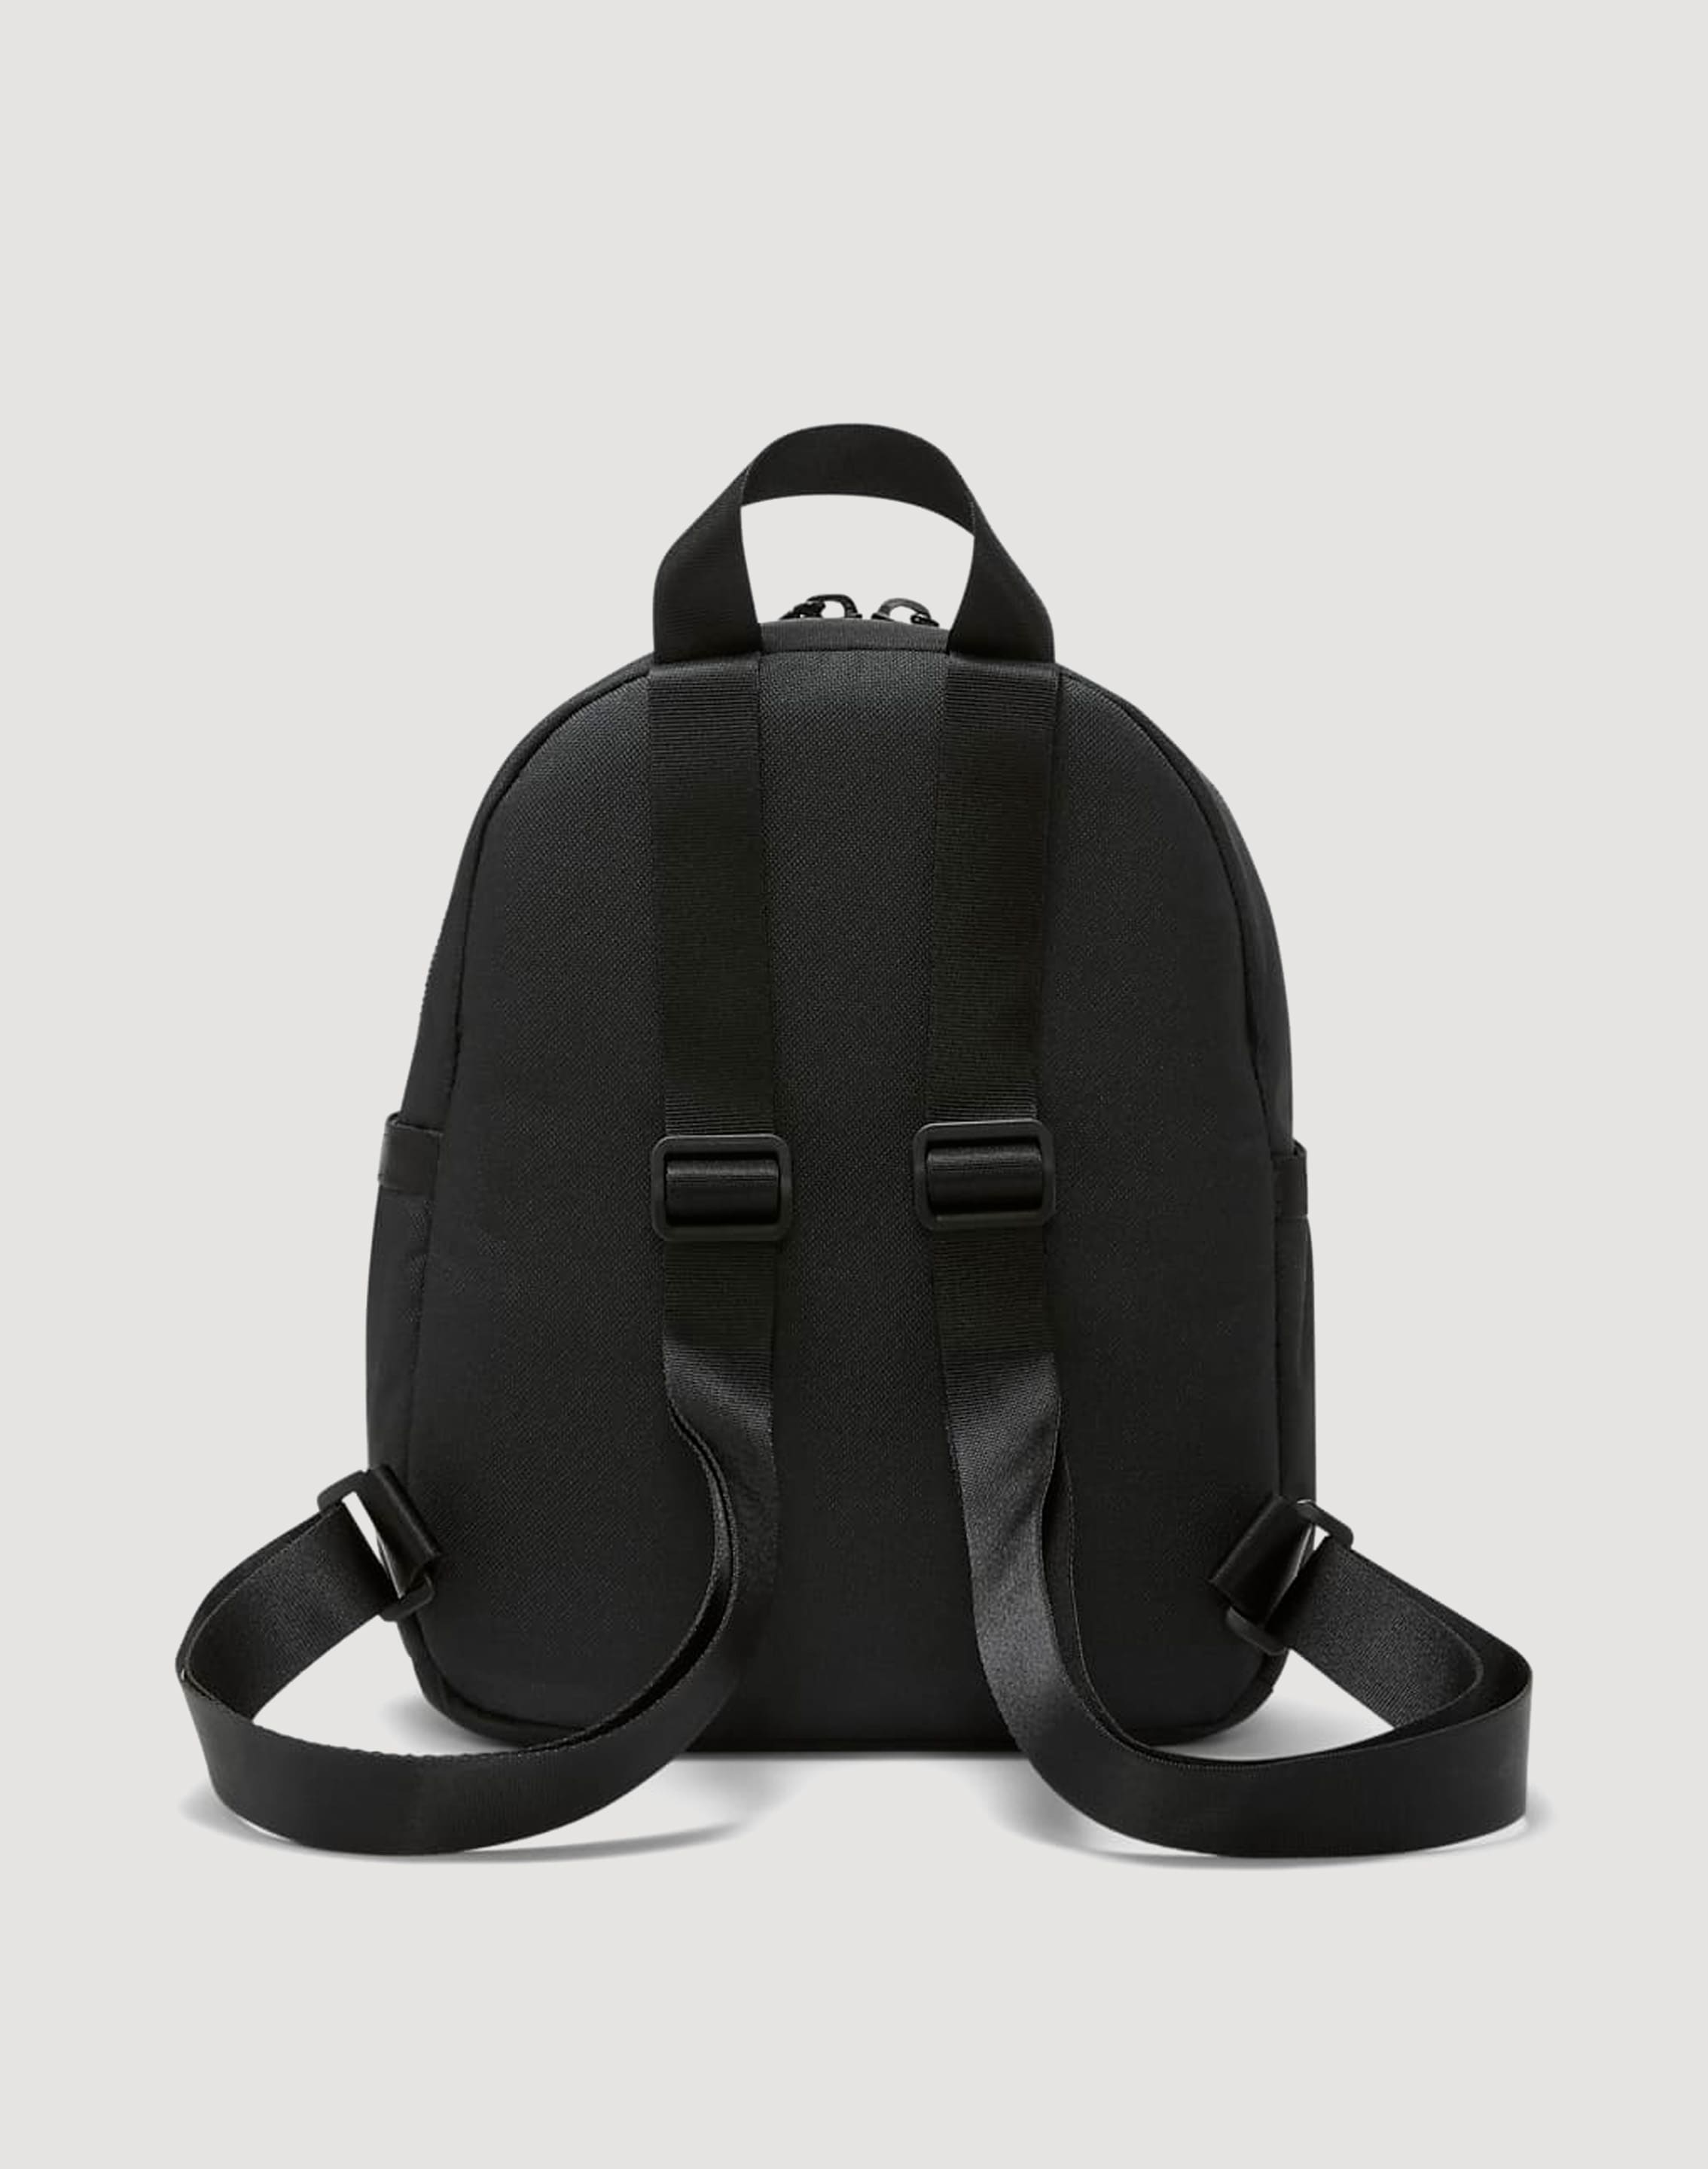 Nike Futura 365 Mini Backpack – DTLR